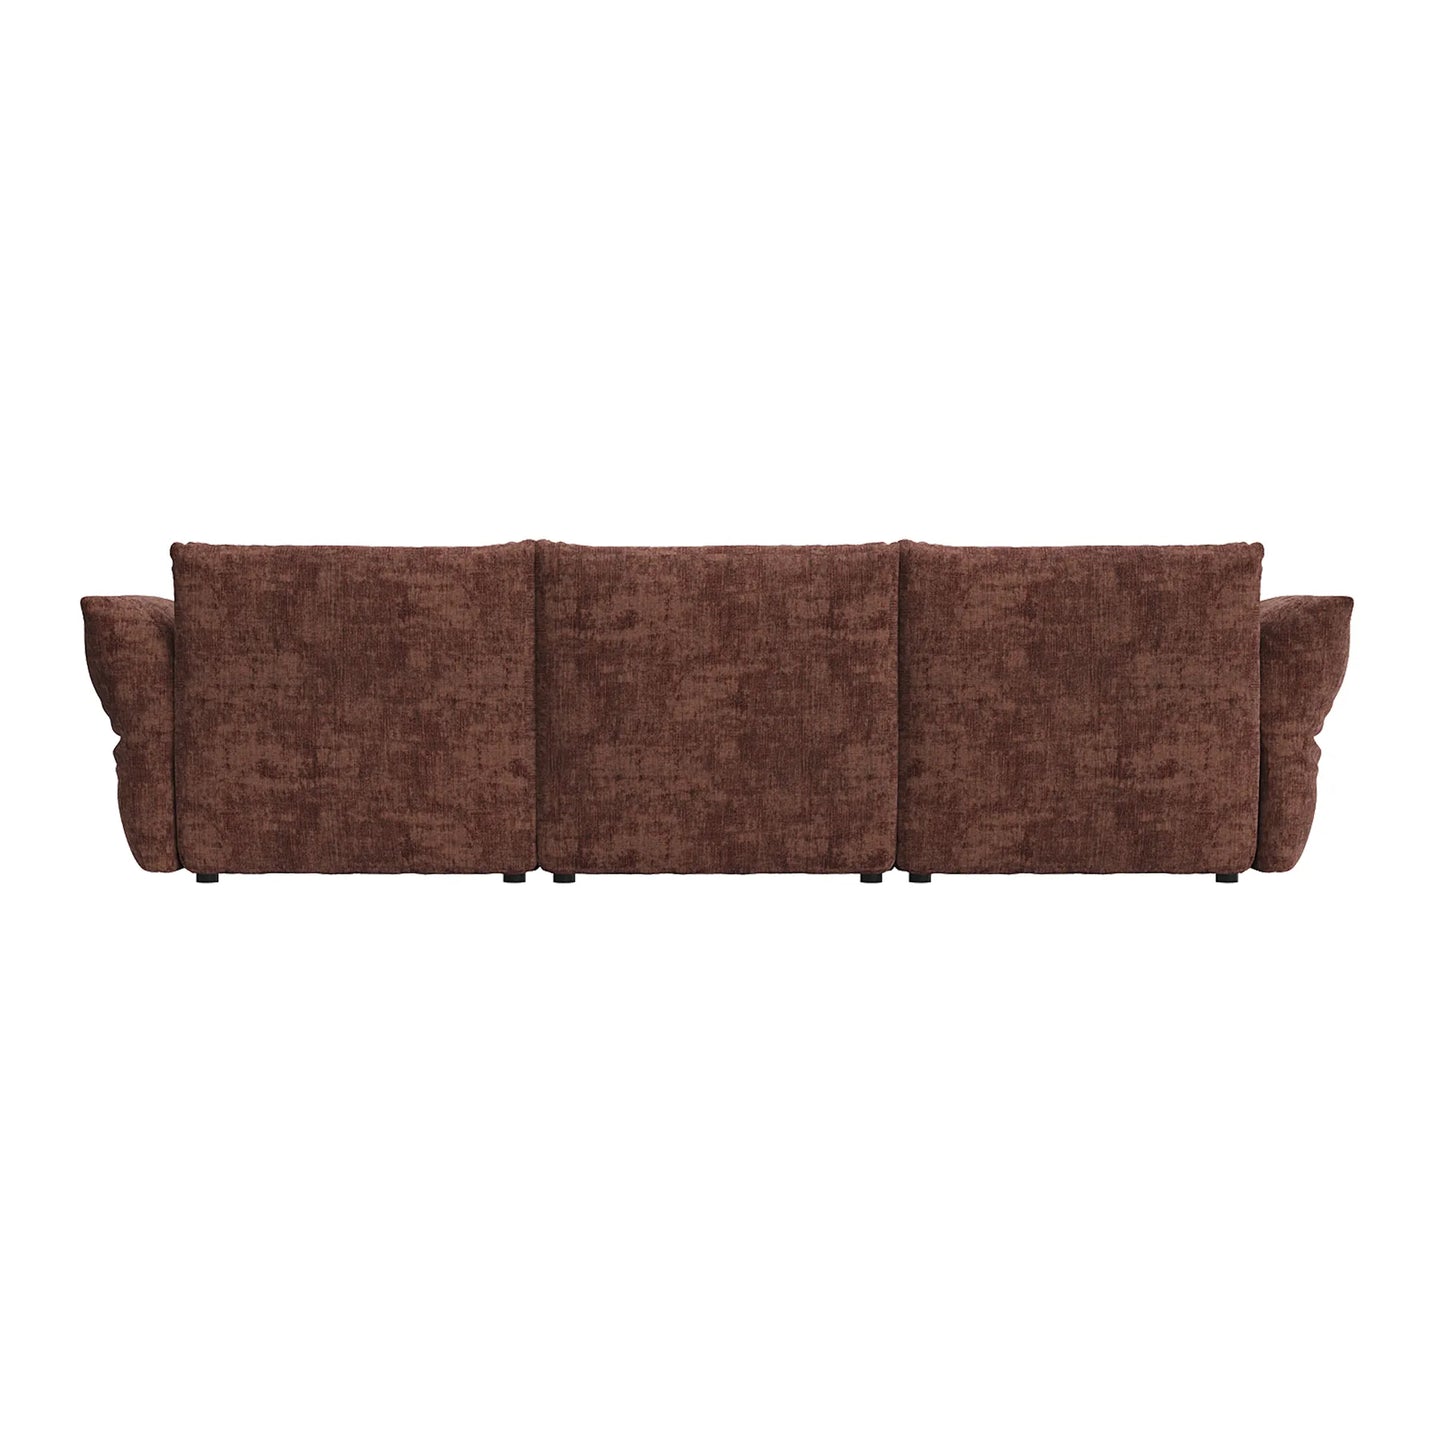 Puff 4 Seater Sofa - Solo Auburn